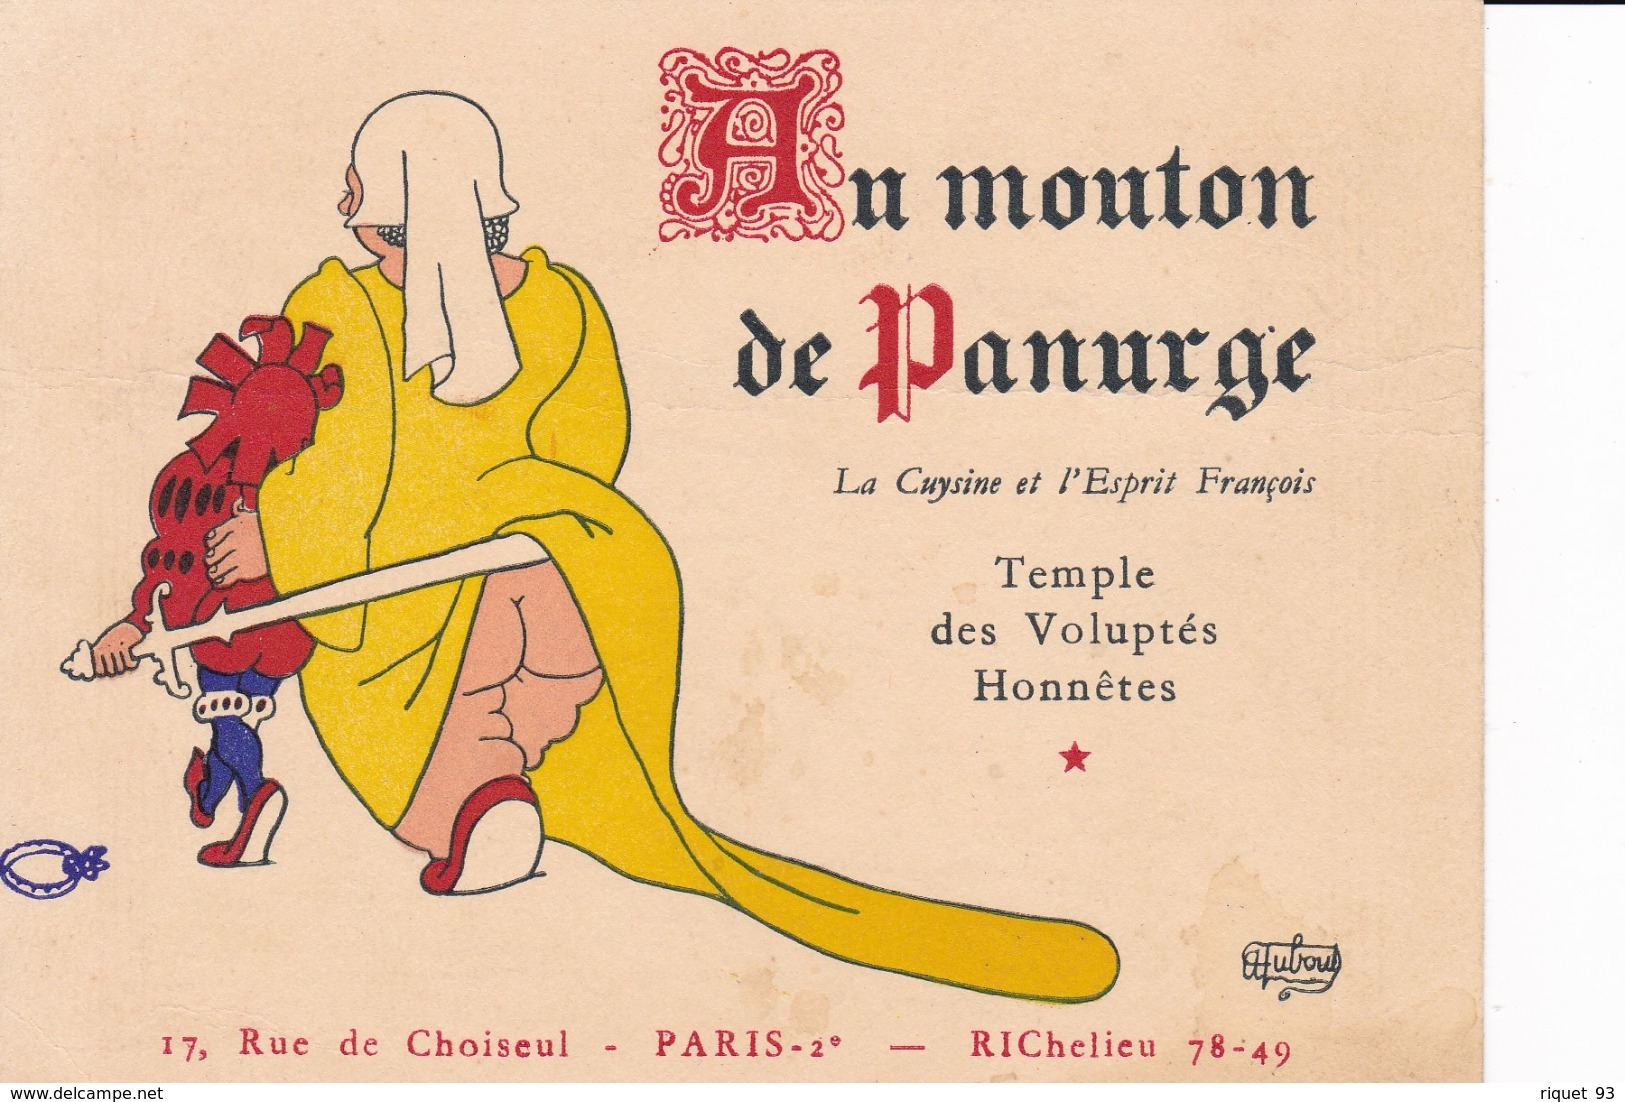 AU MOUTON DE PANURGE - Restaurent Paris 2è - Cartes De Visite